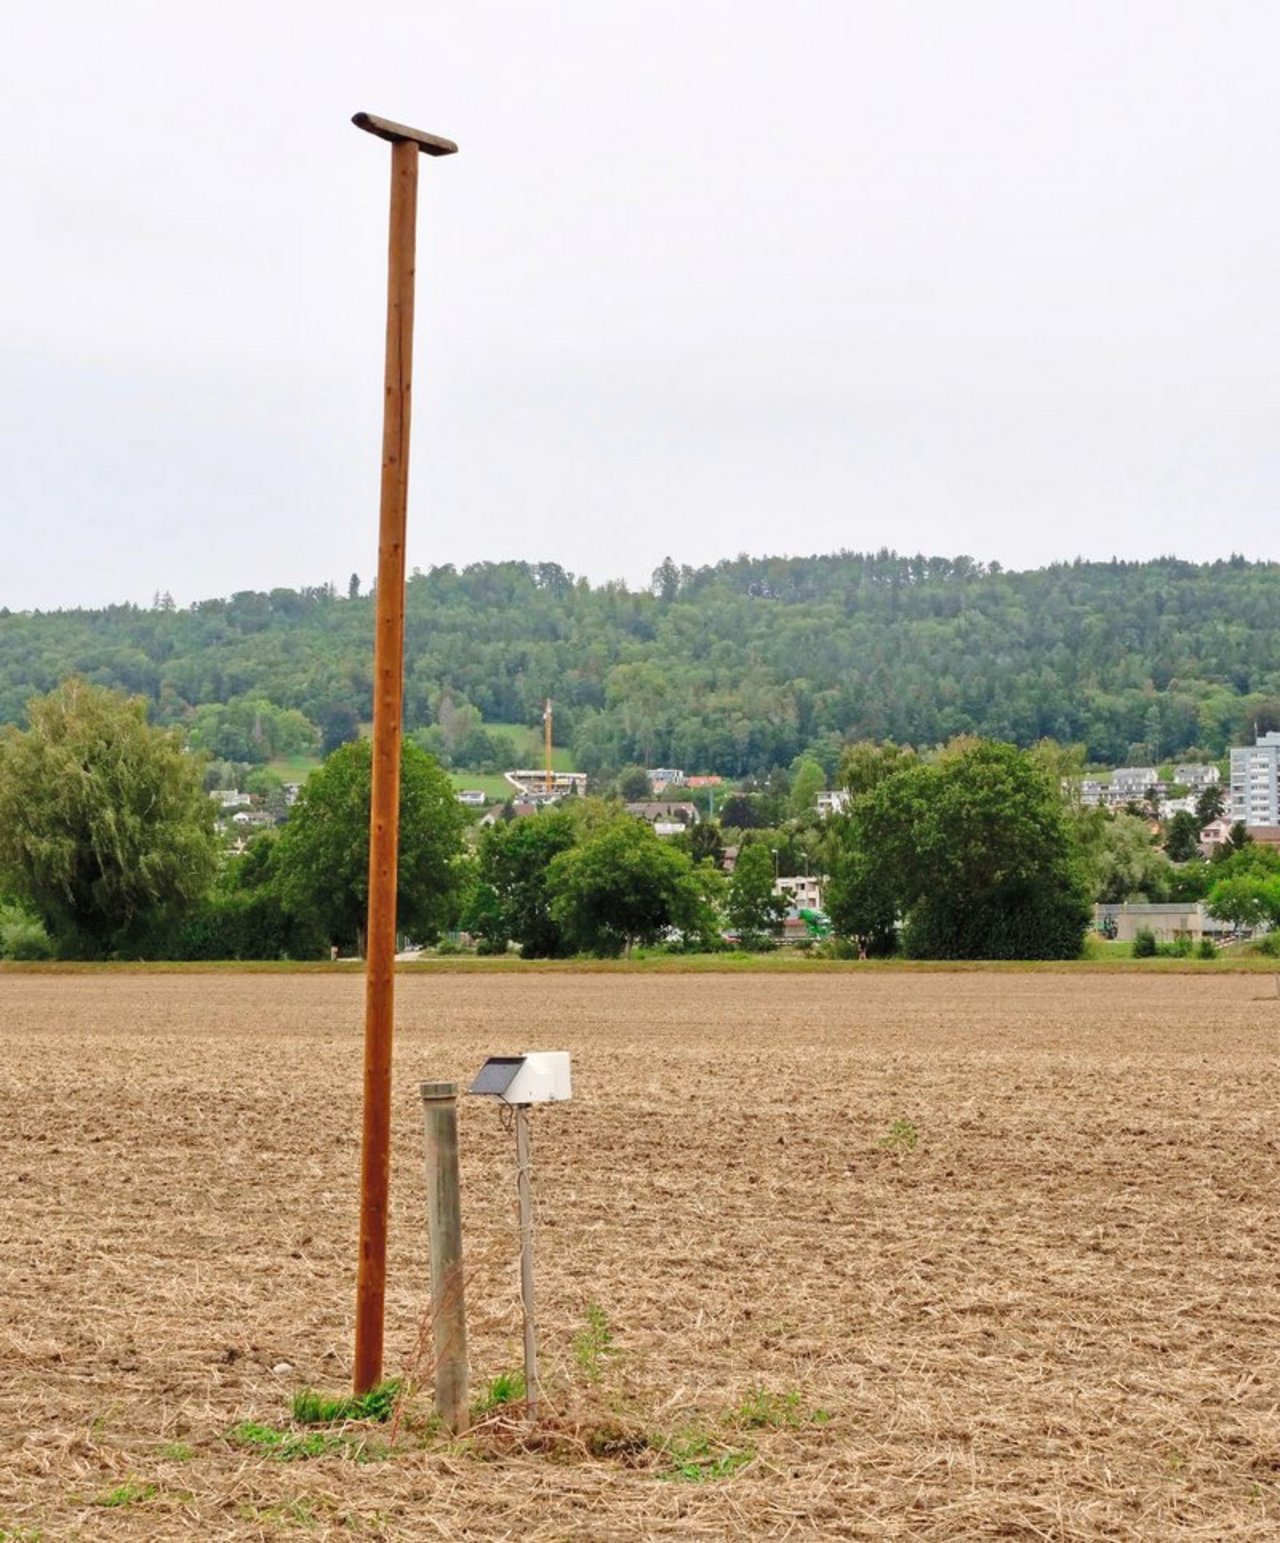 Kein zusätzliches Hindernis: Die Wetterstation auf der 15 ha-Parzelle steht direkt neben der Grundwasser-Messstelle und der Sitzstange der Greifvögel. Bild: Martina Rüegger